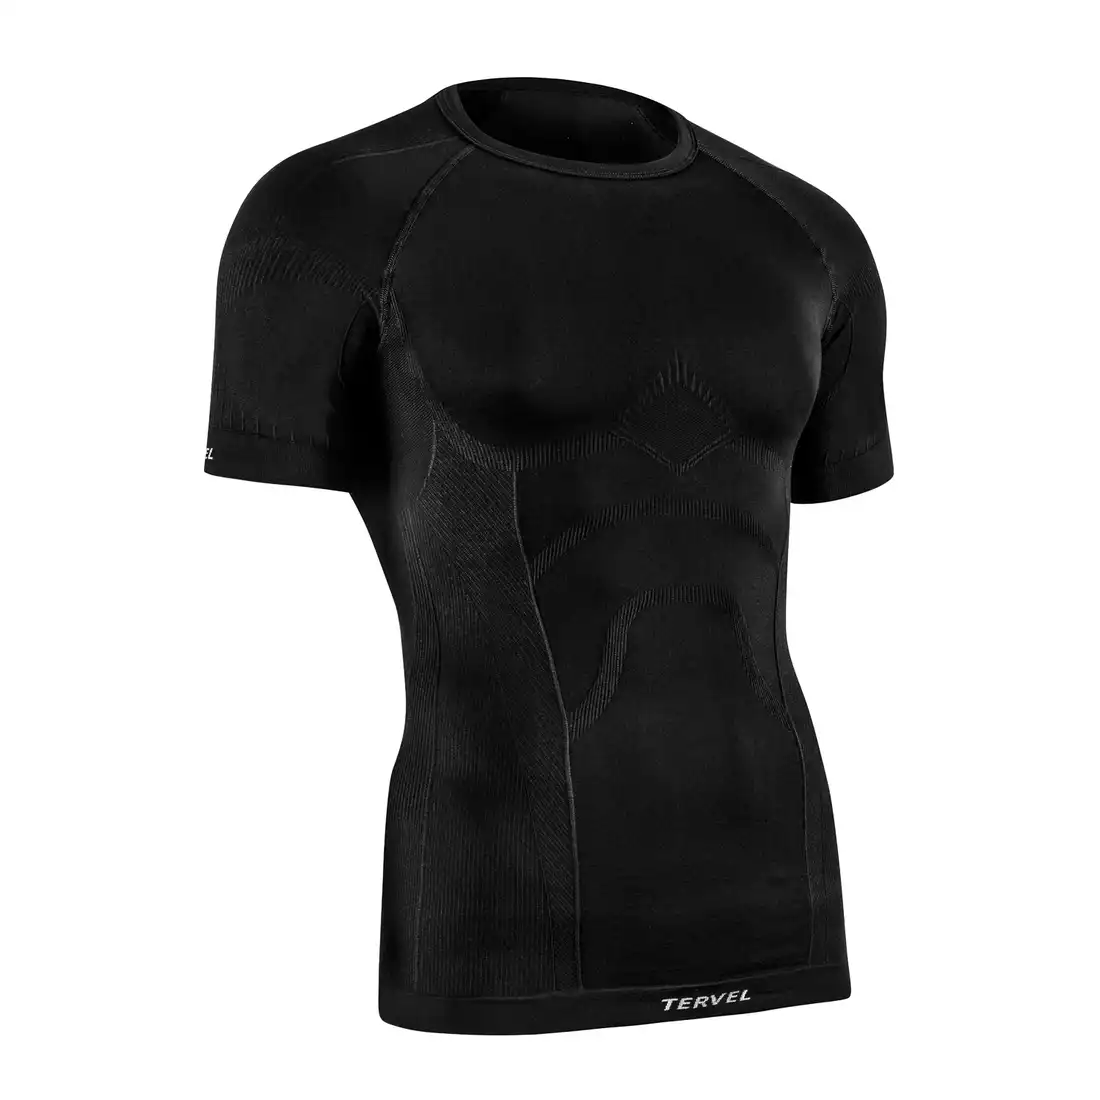 TERVEL COMFORTLINE 1102 - męska koszulka termoaktywna, krótki rękaw, kolor: Czarny